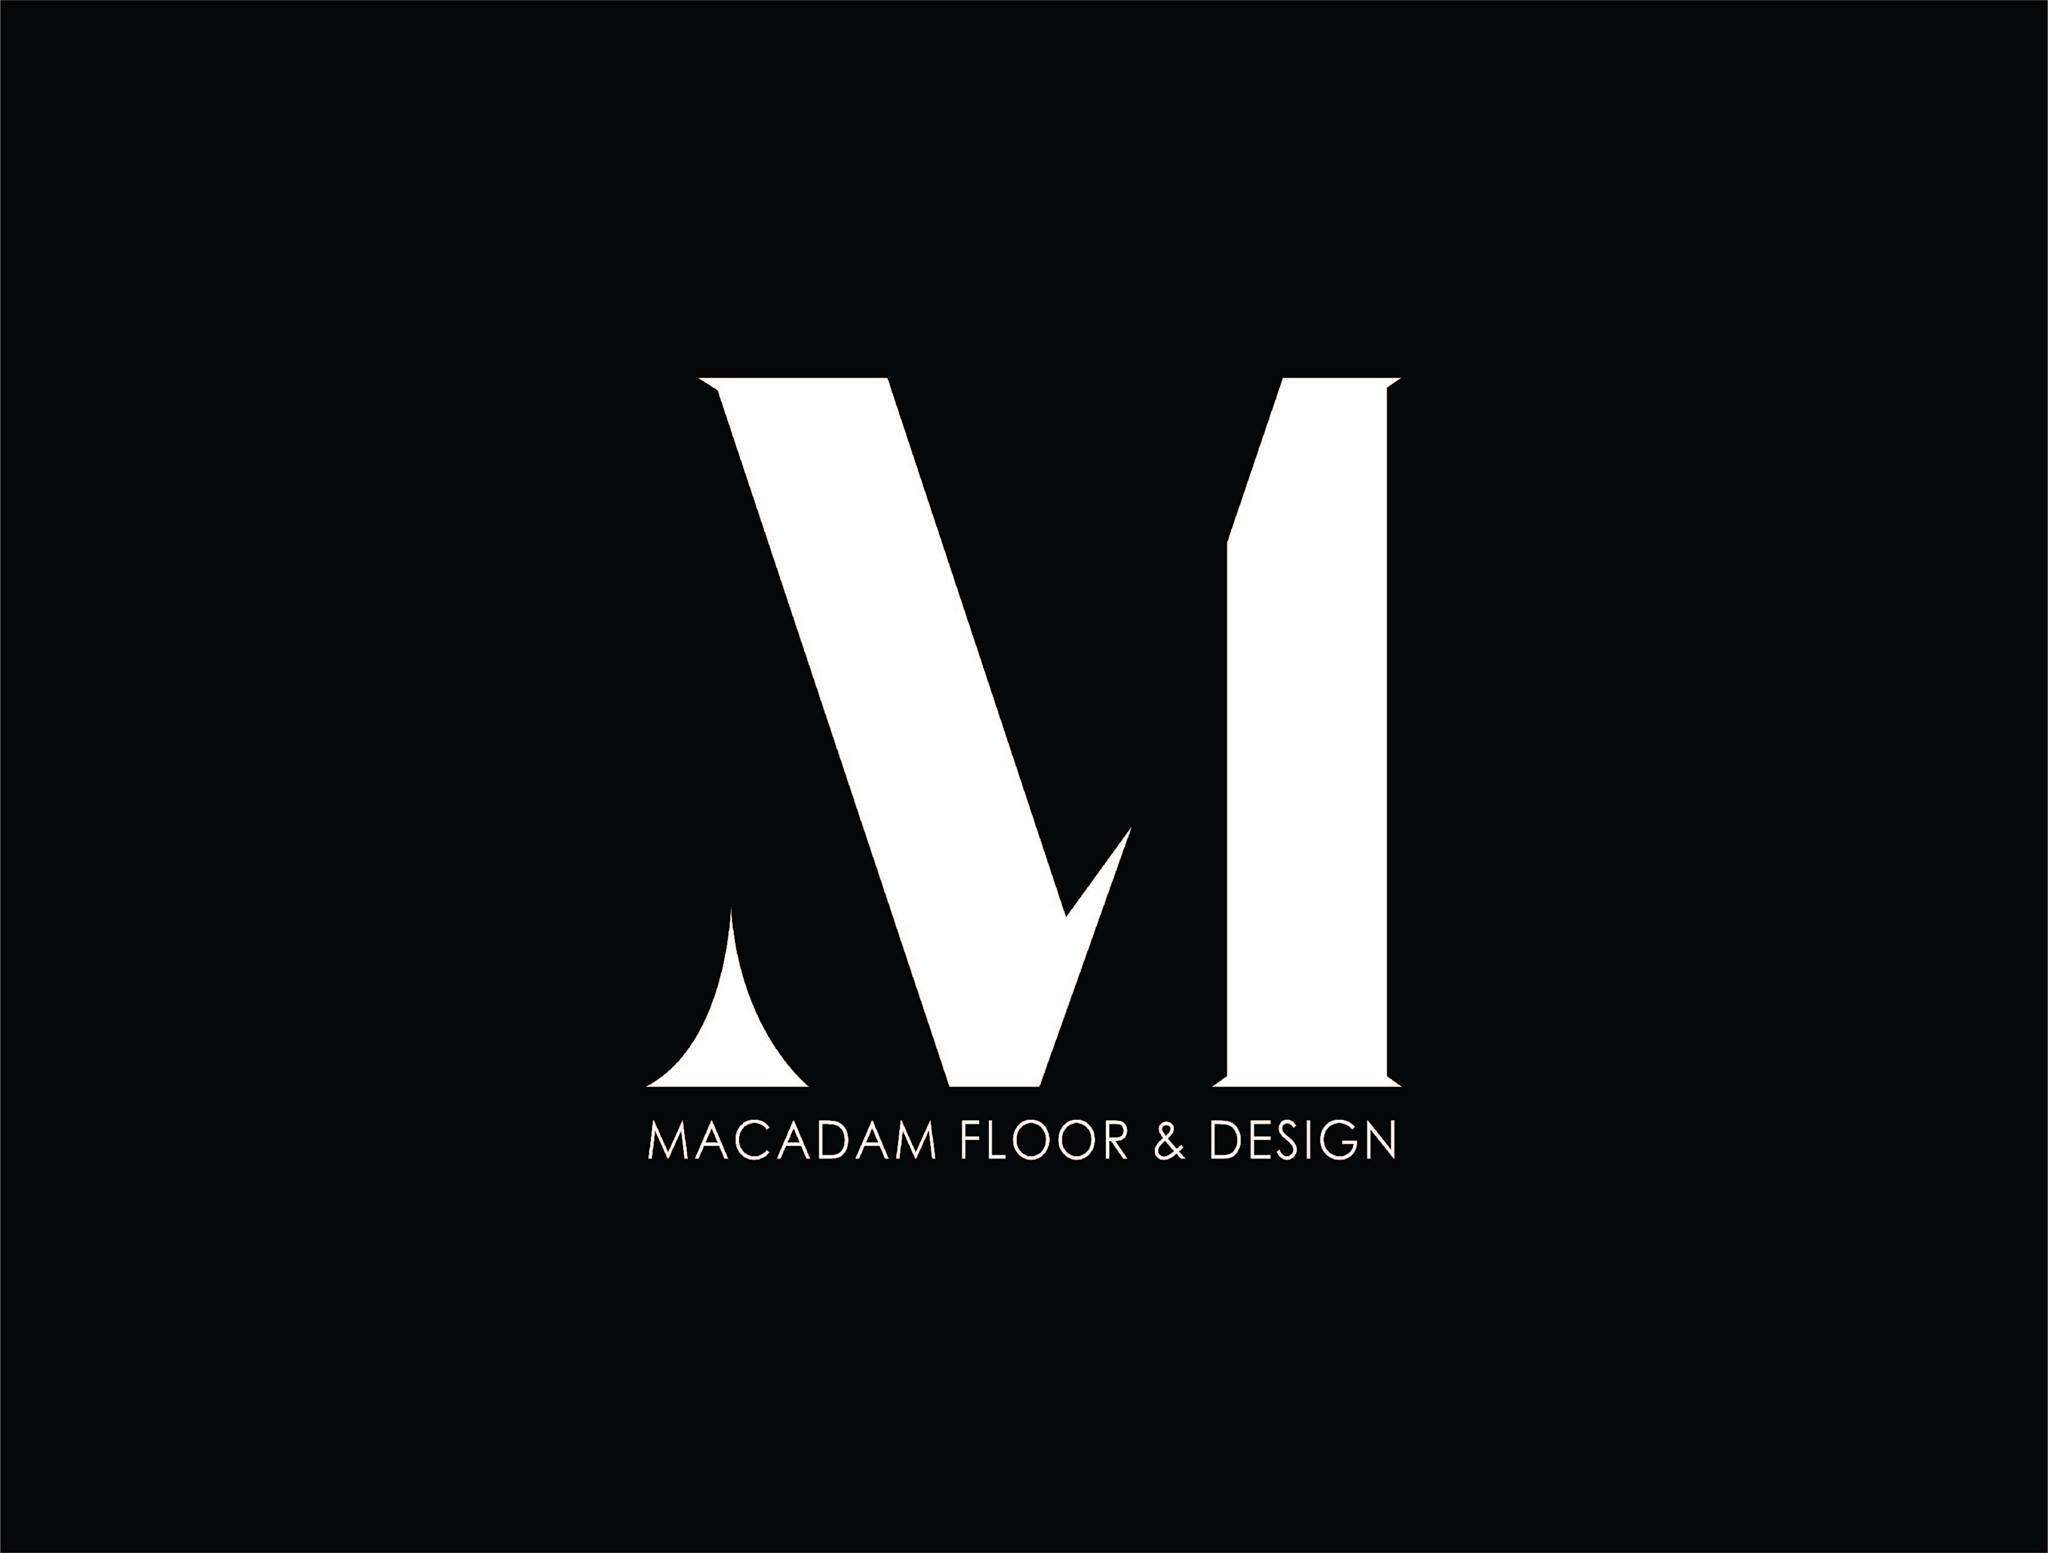 Macadam Floor Design Crunchbase